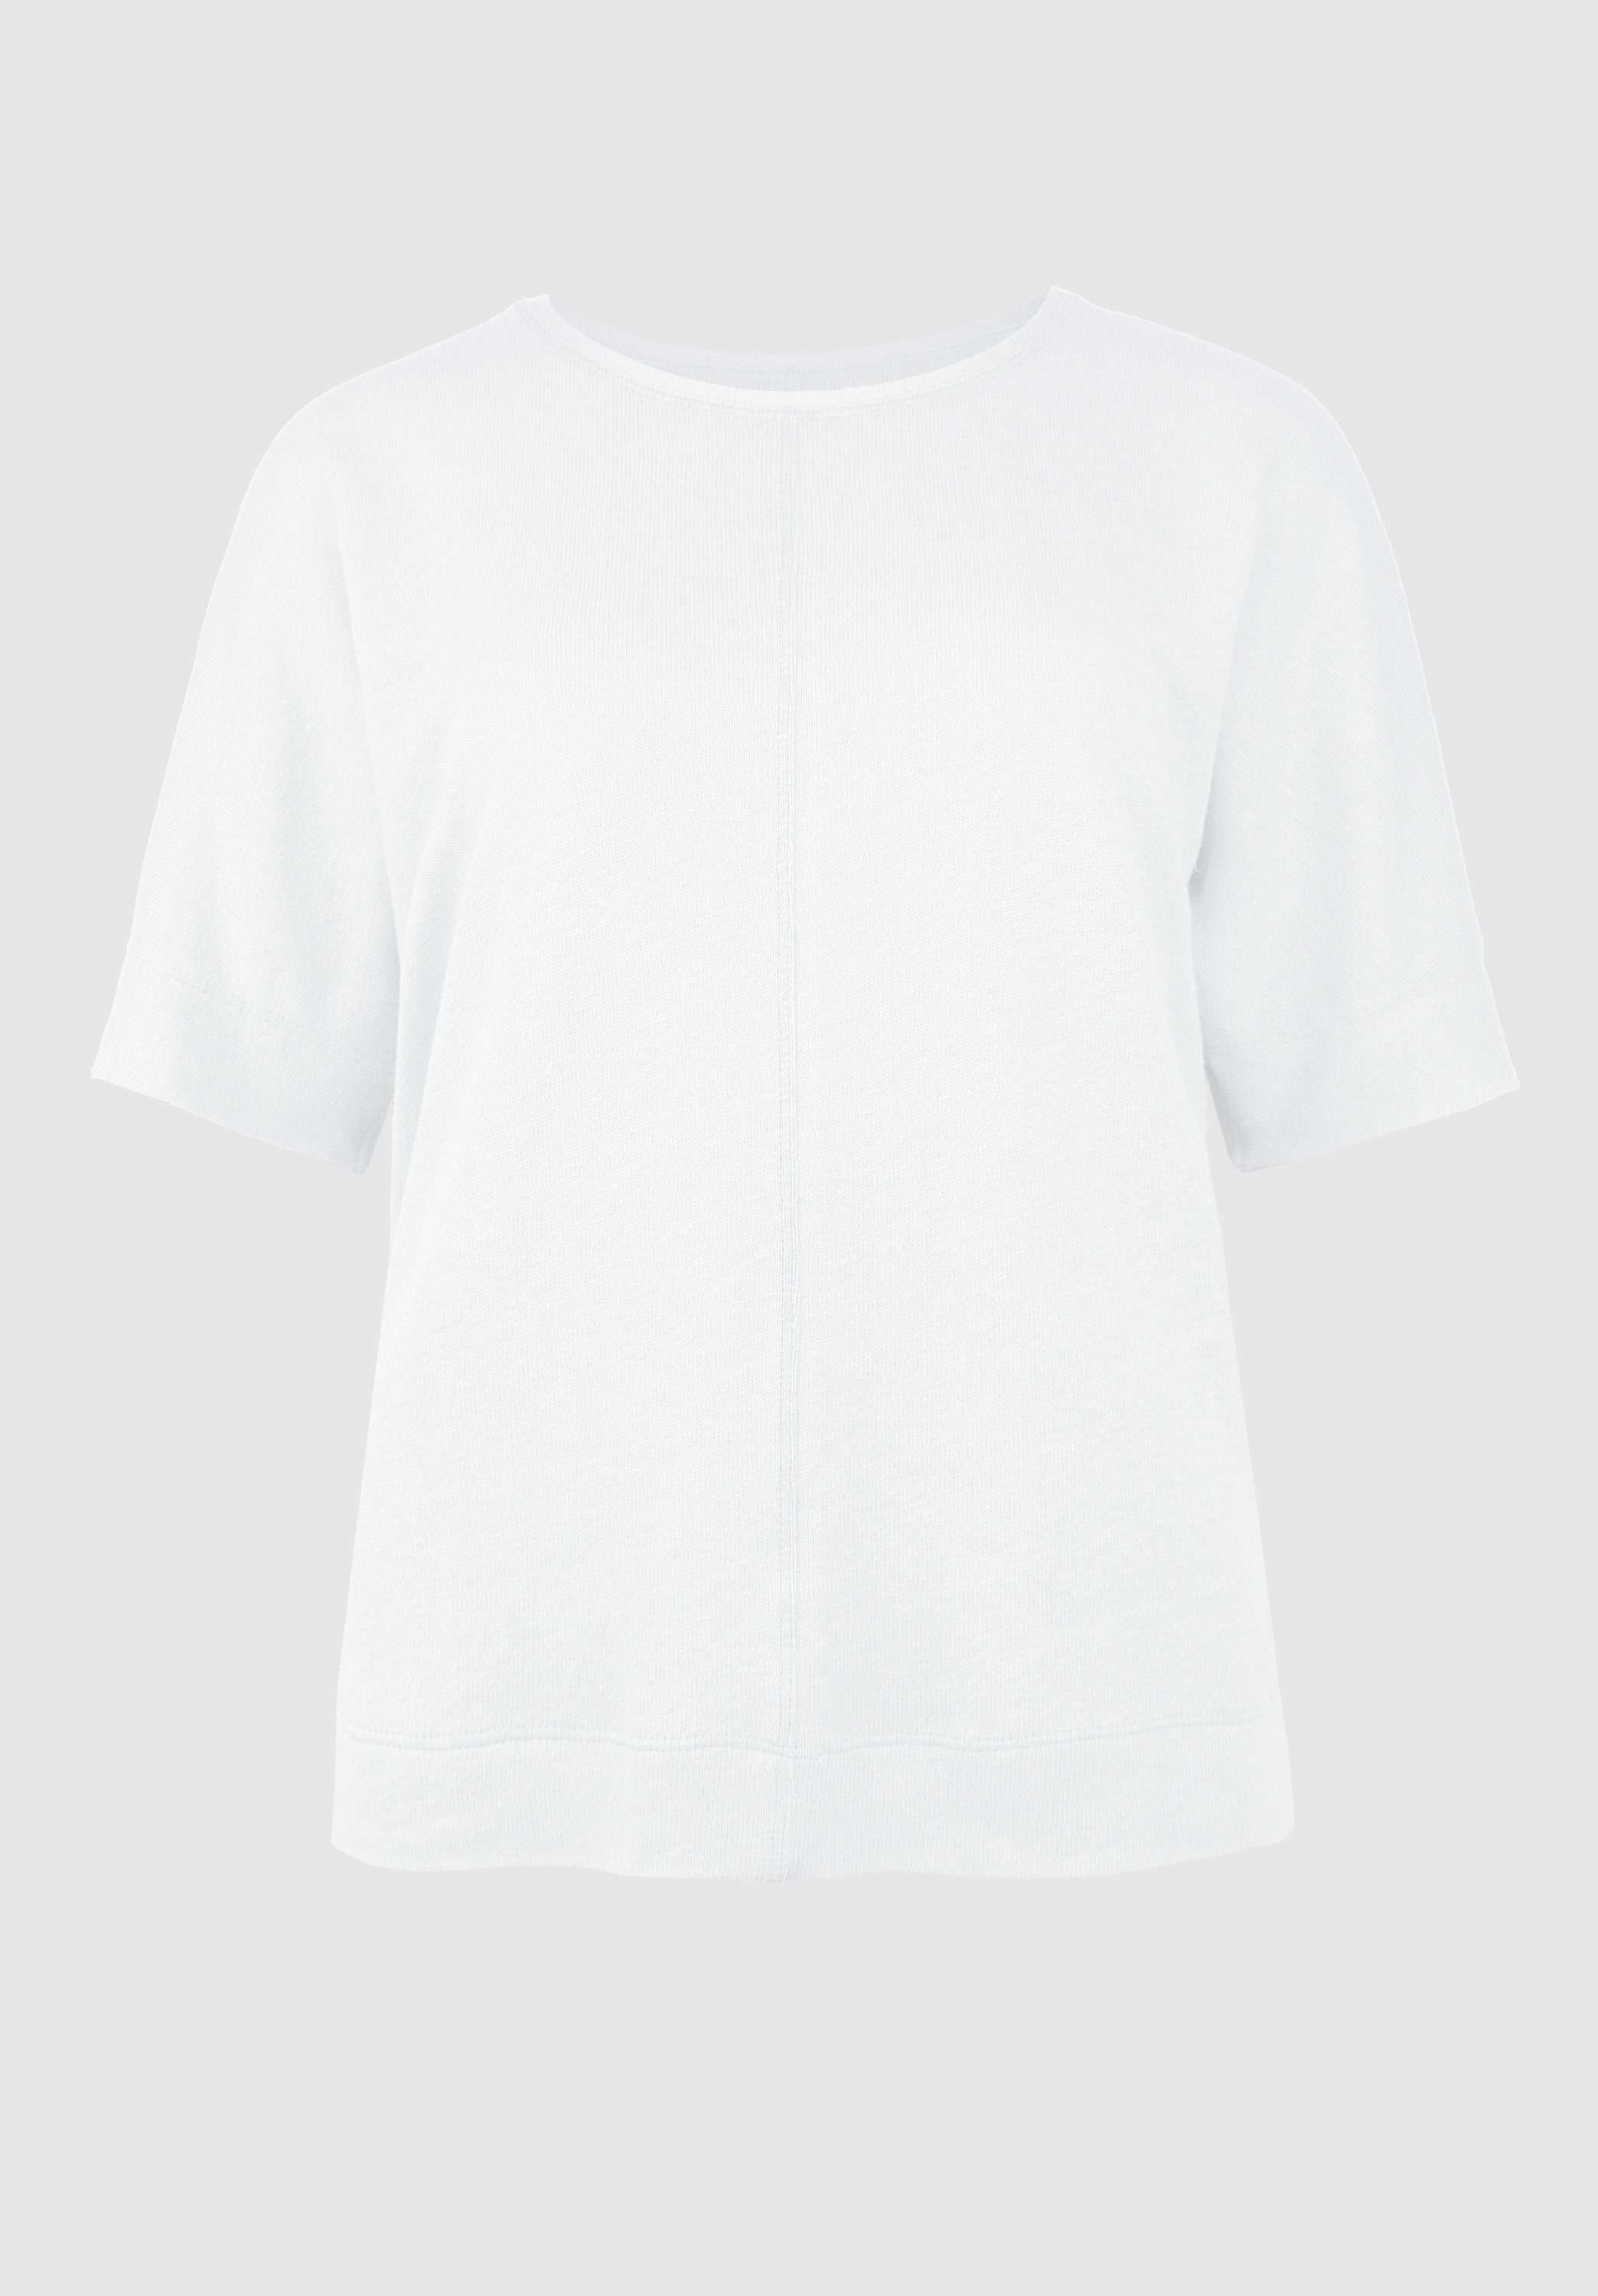 moderner JULIE Shirt coolen und white Rundhalsshirt Details Web in Optik bianca